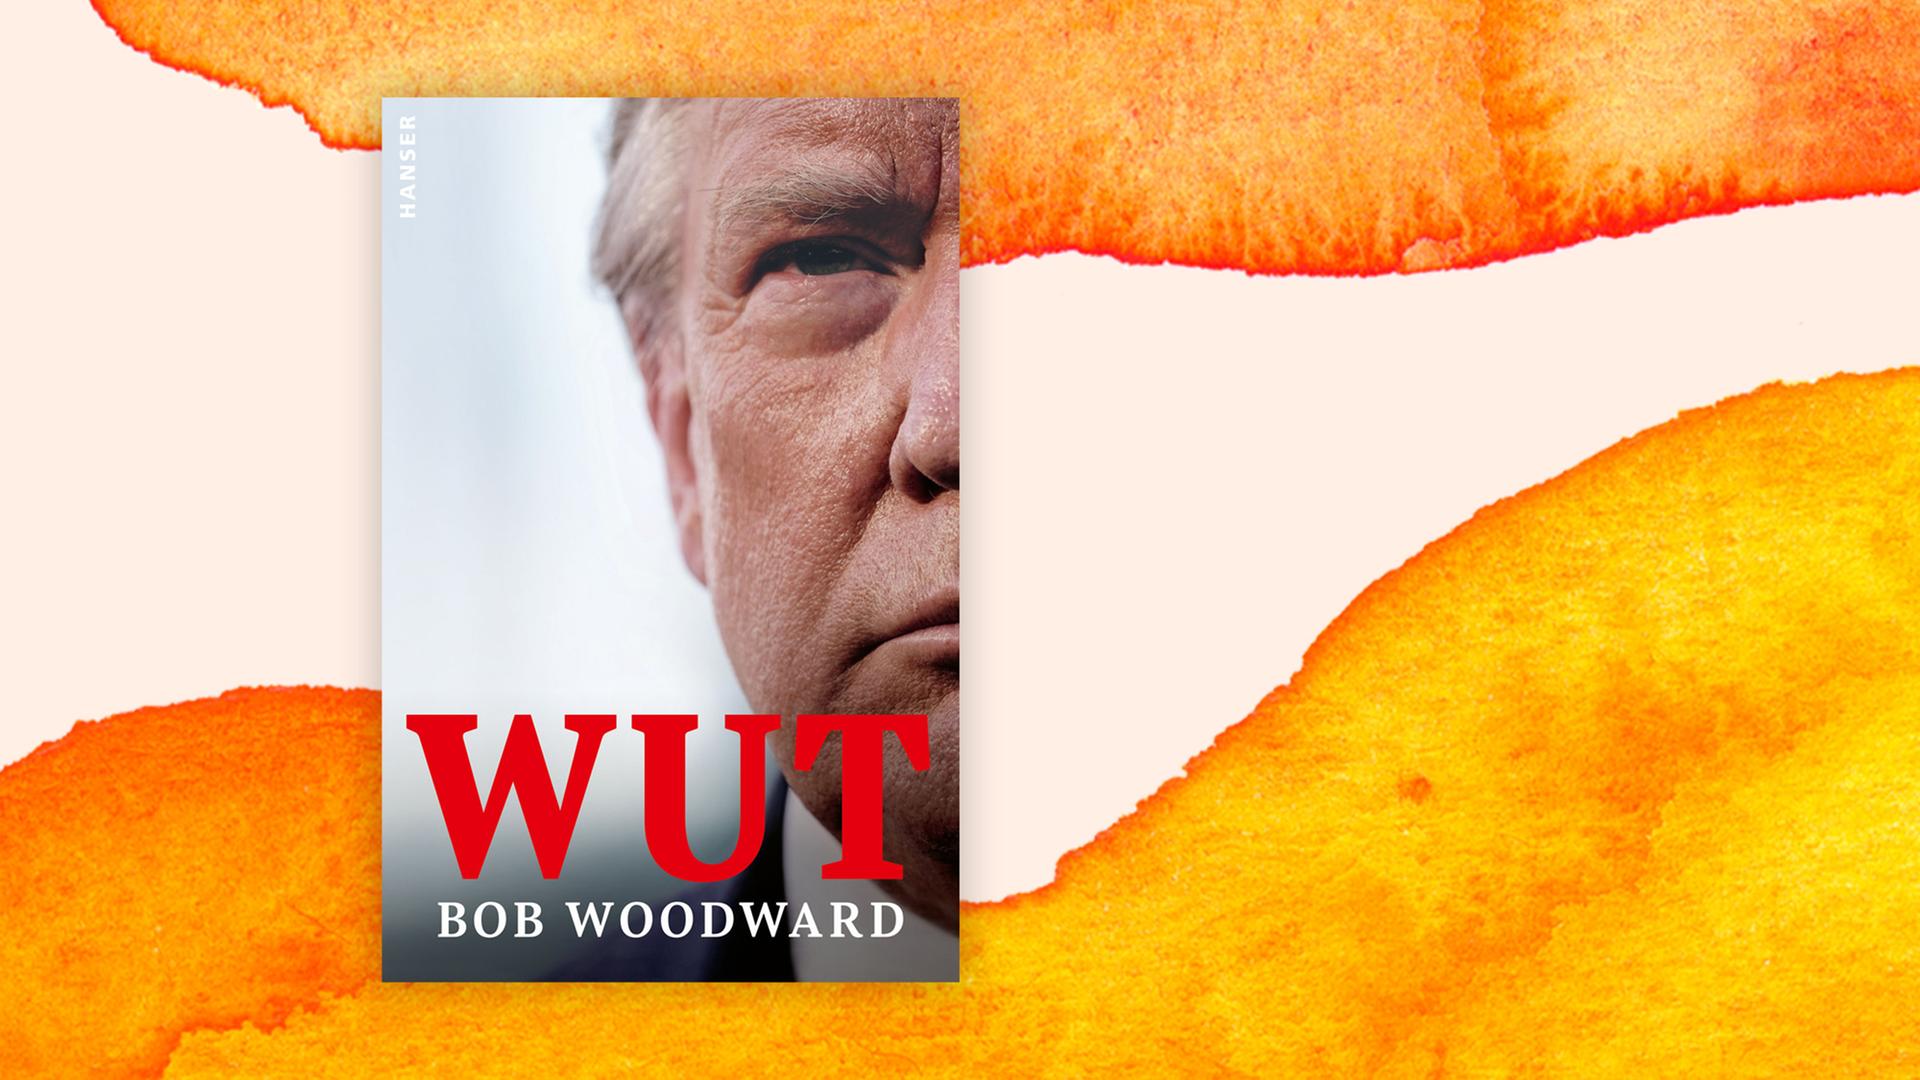 Cover des Buchs "Wut": darauf ein sehr nahes Porträt von Donald Trump, nur die eine Gesichtshälfte ist zu sehen, darauf in roten Buchstaben der Titel "Wut".